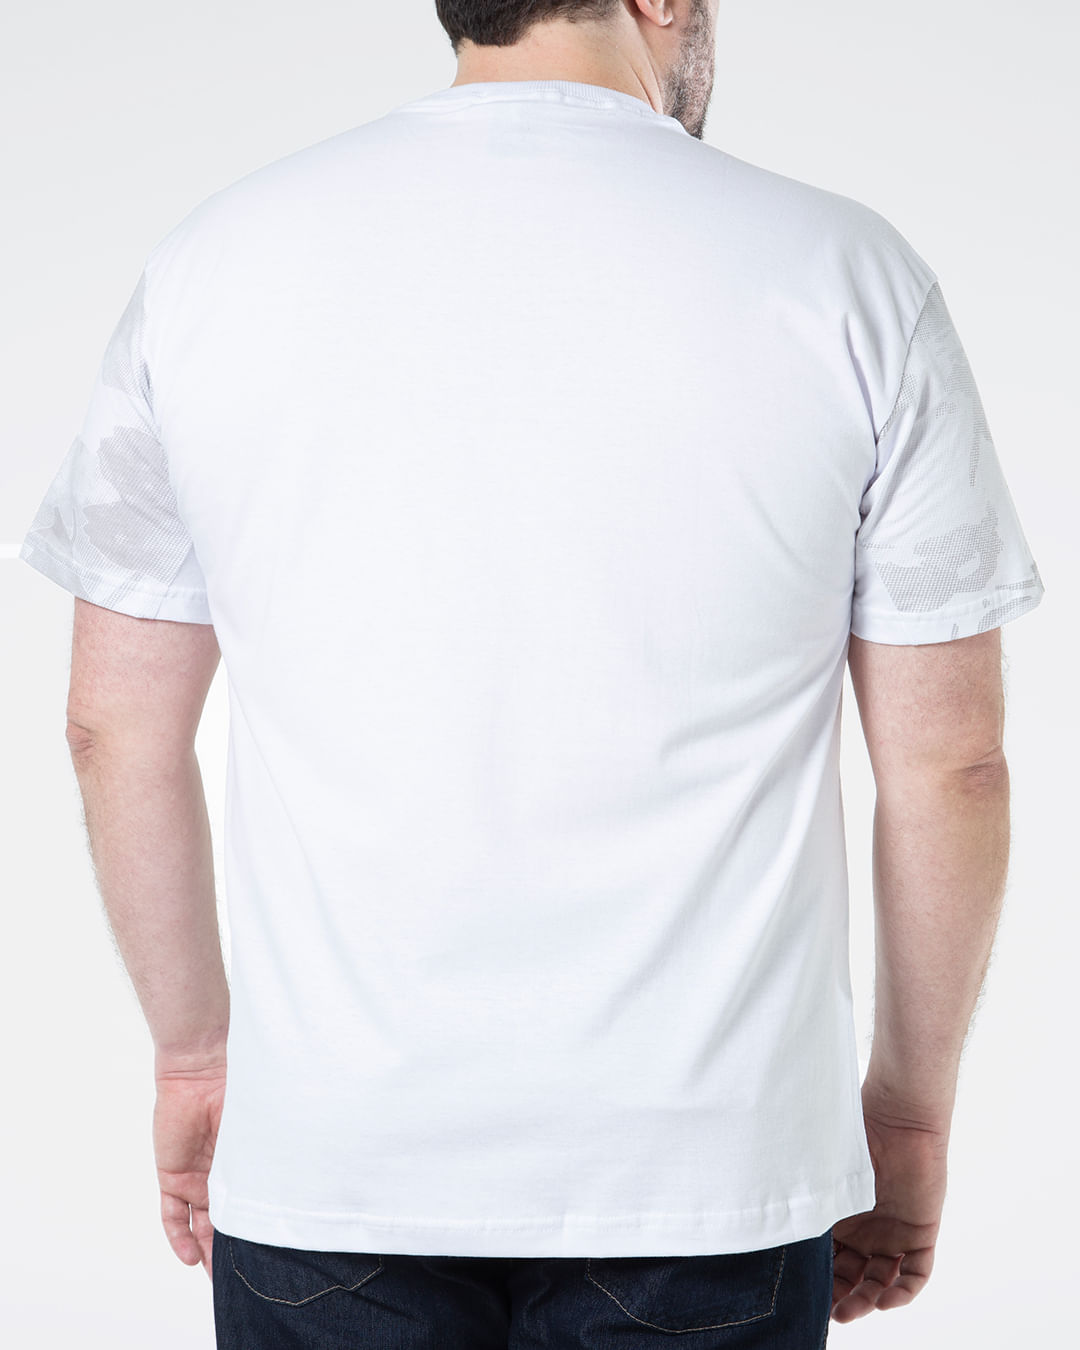 Camiseta-Masculina-Plus-Size-Estampa-Camuflada-Fatal-Branca